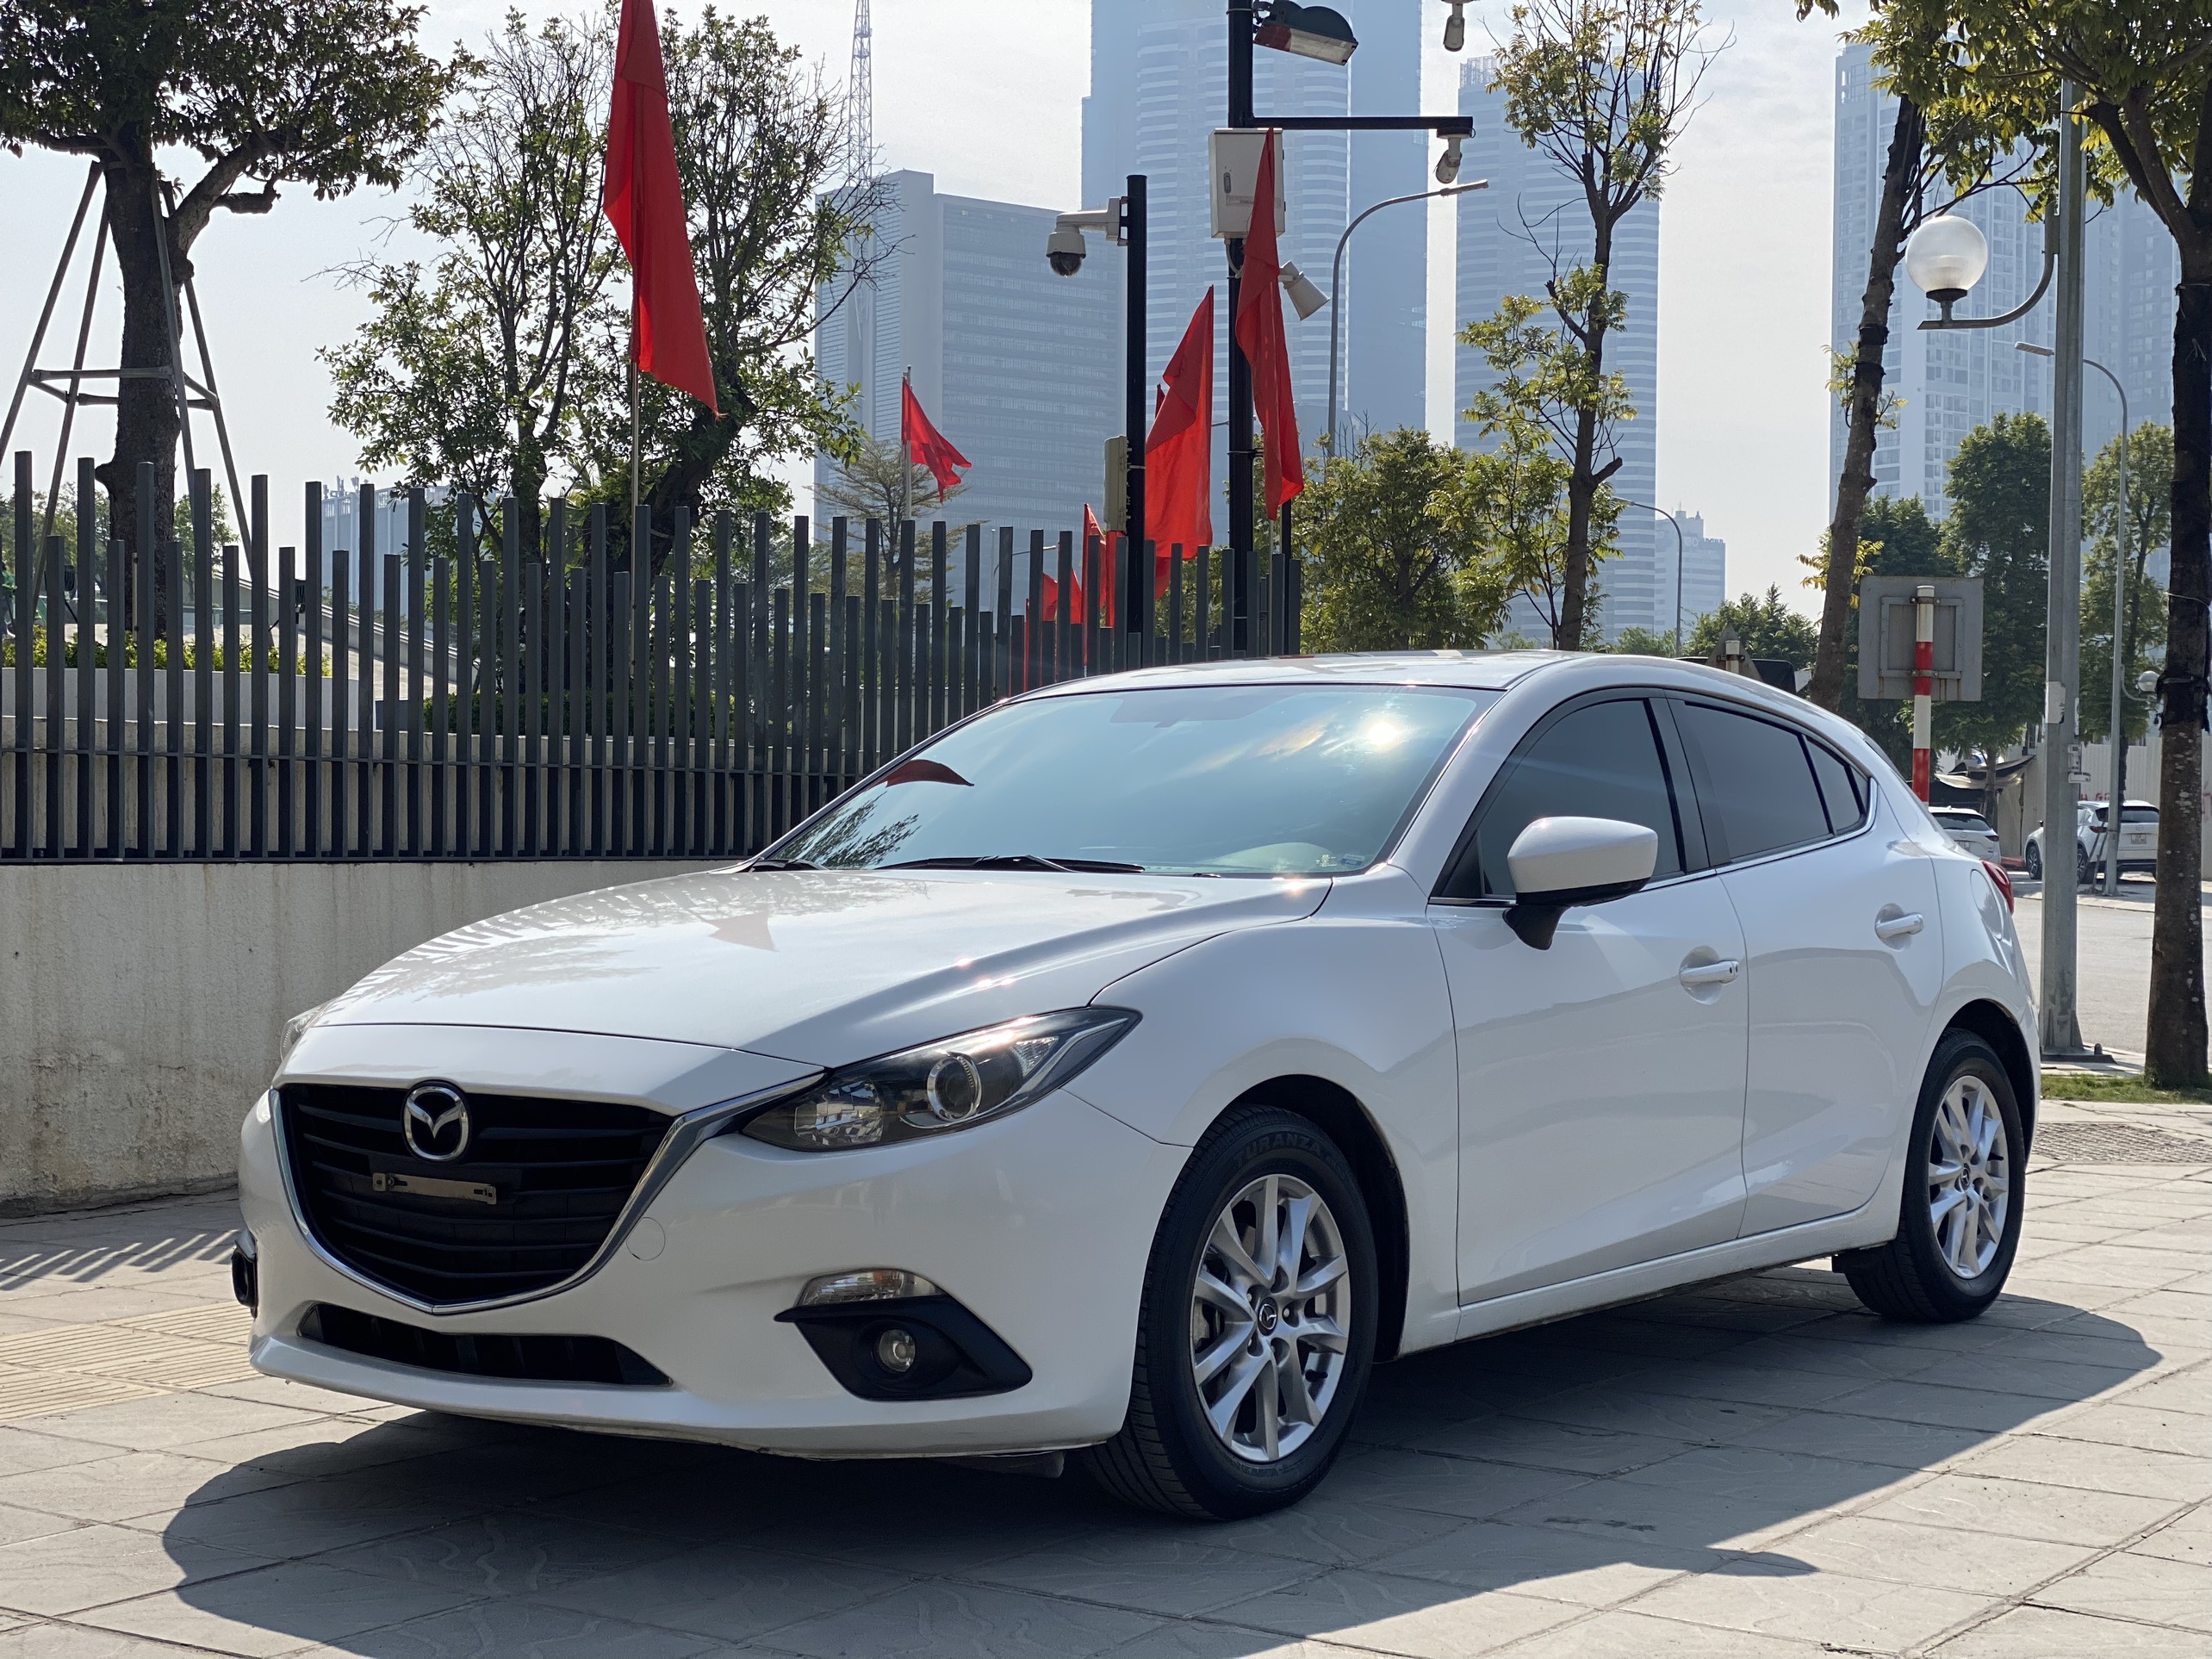 Hình ảnh chi tiết Mazda 3 phiên bản facelift 2015